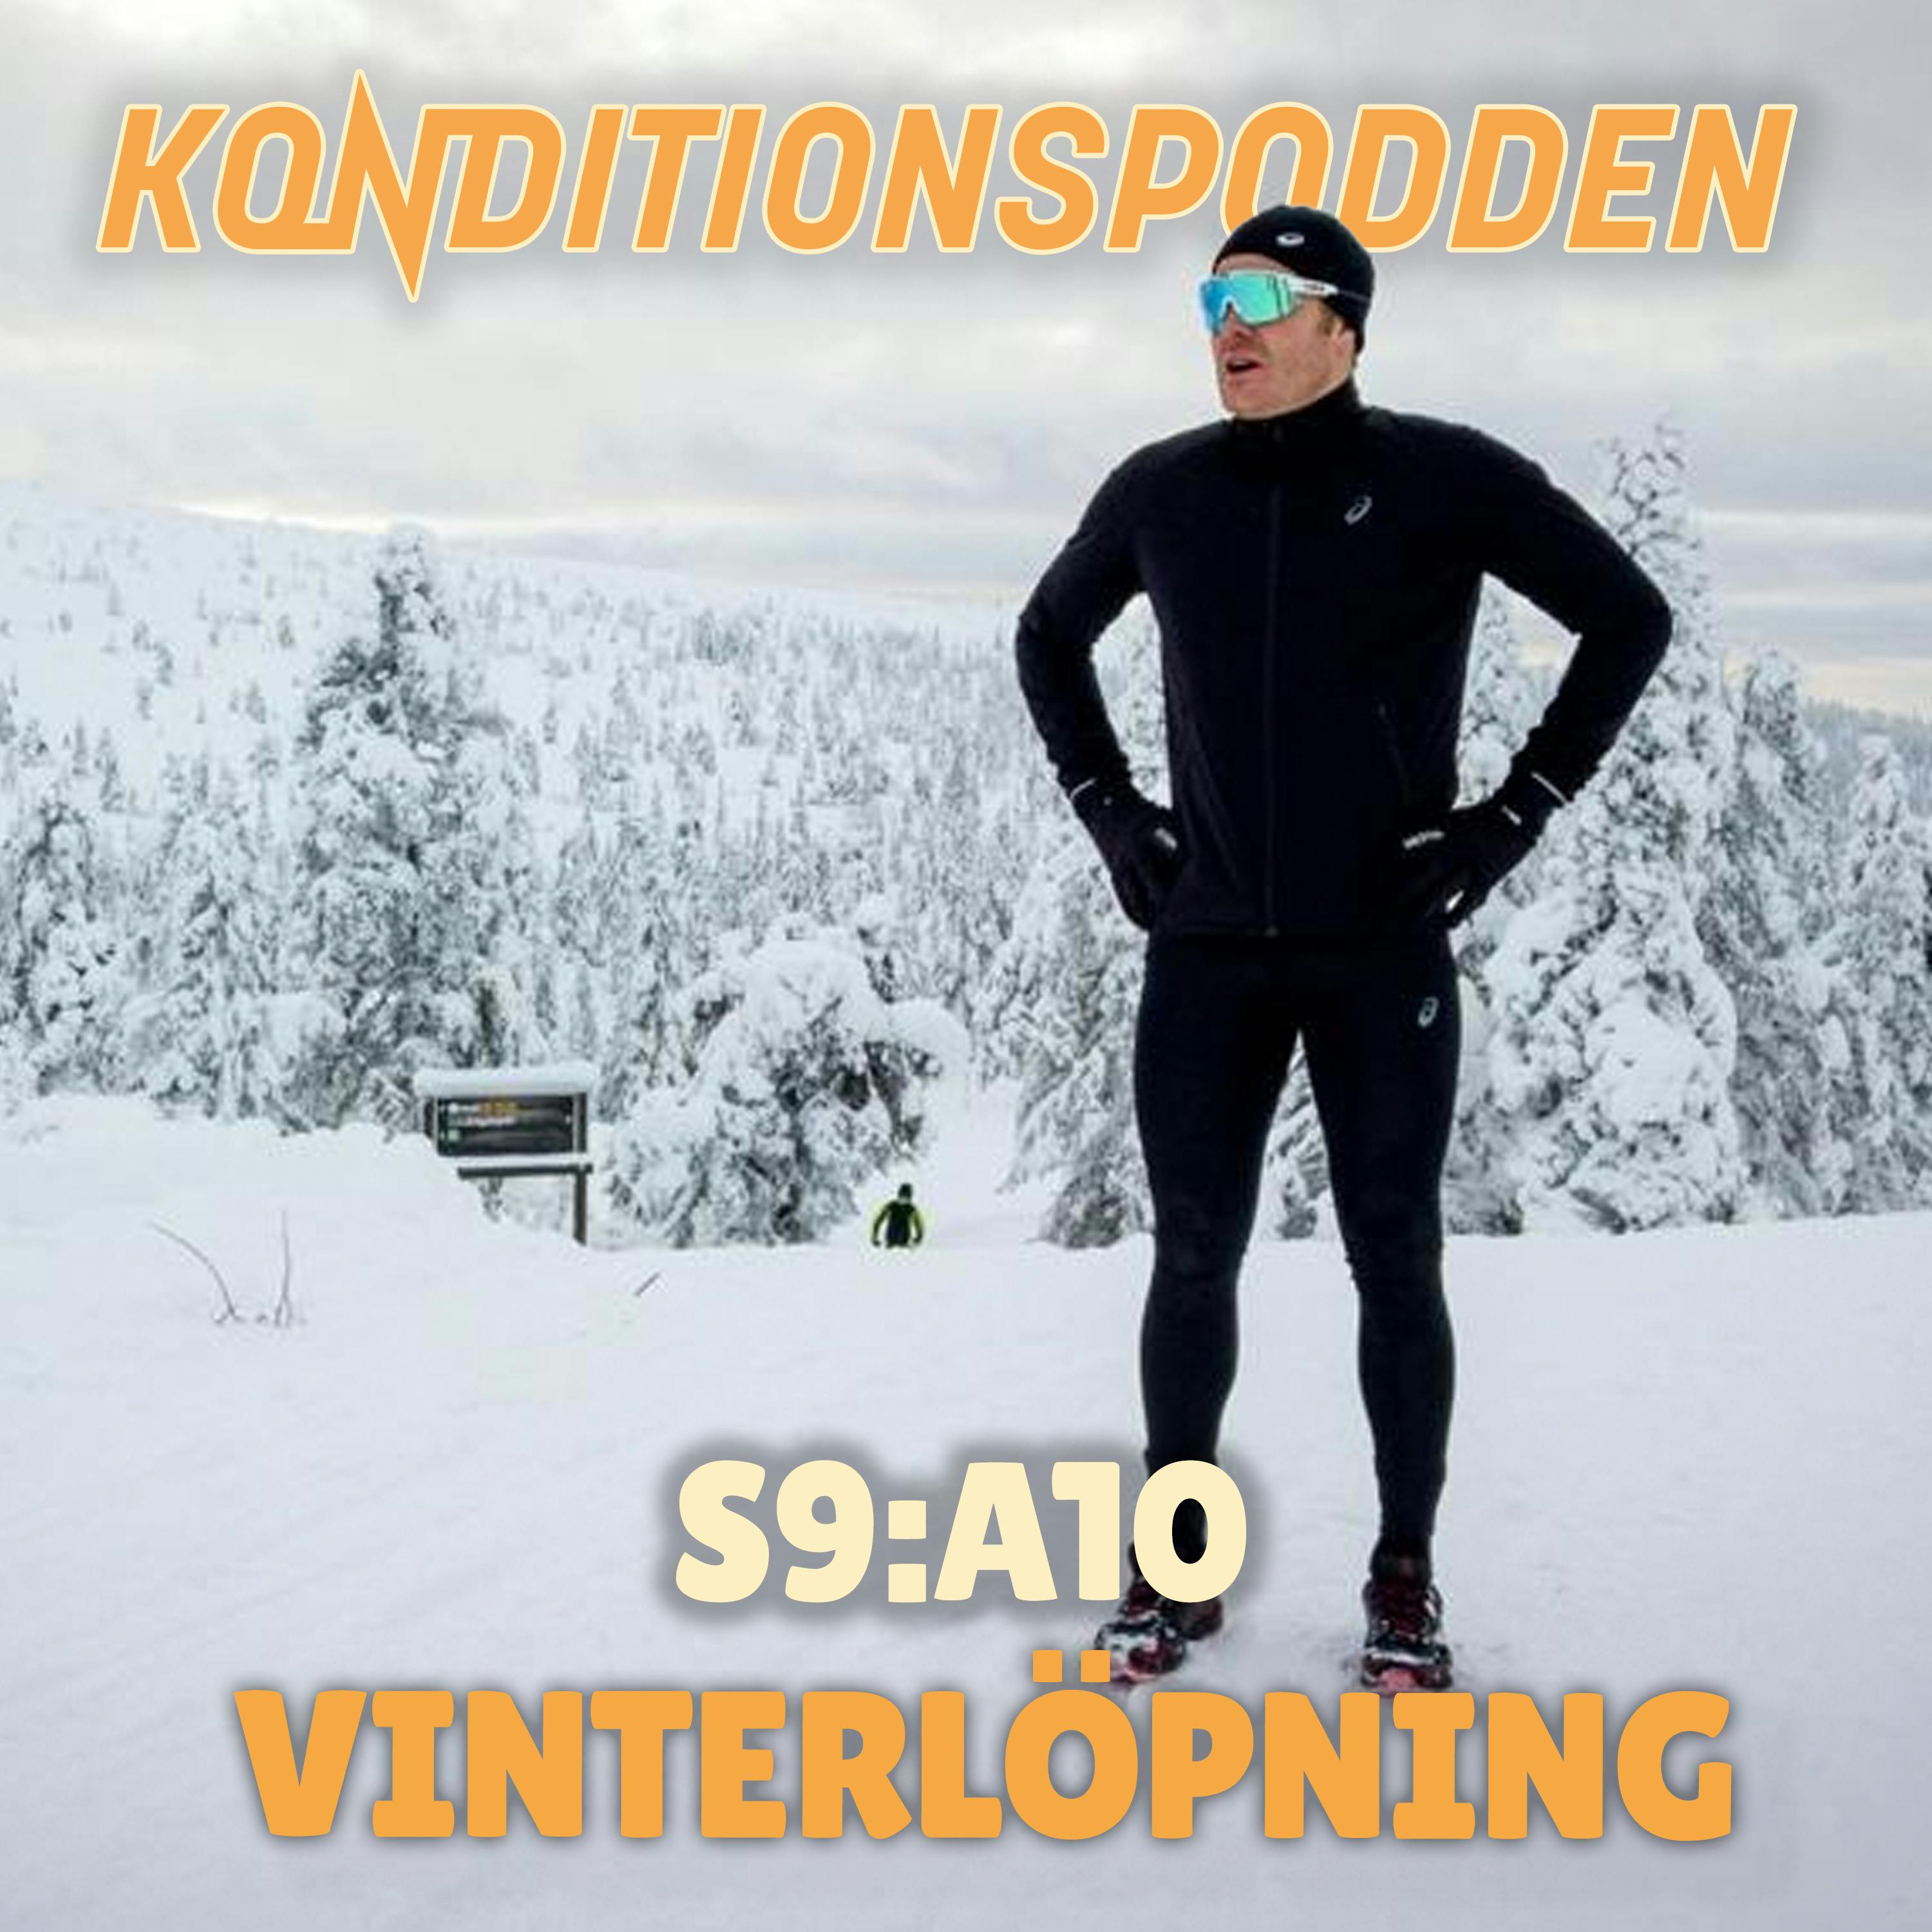 S9A10 Vinterlöpning